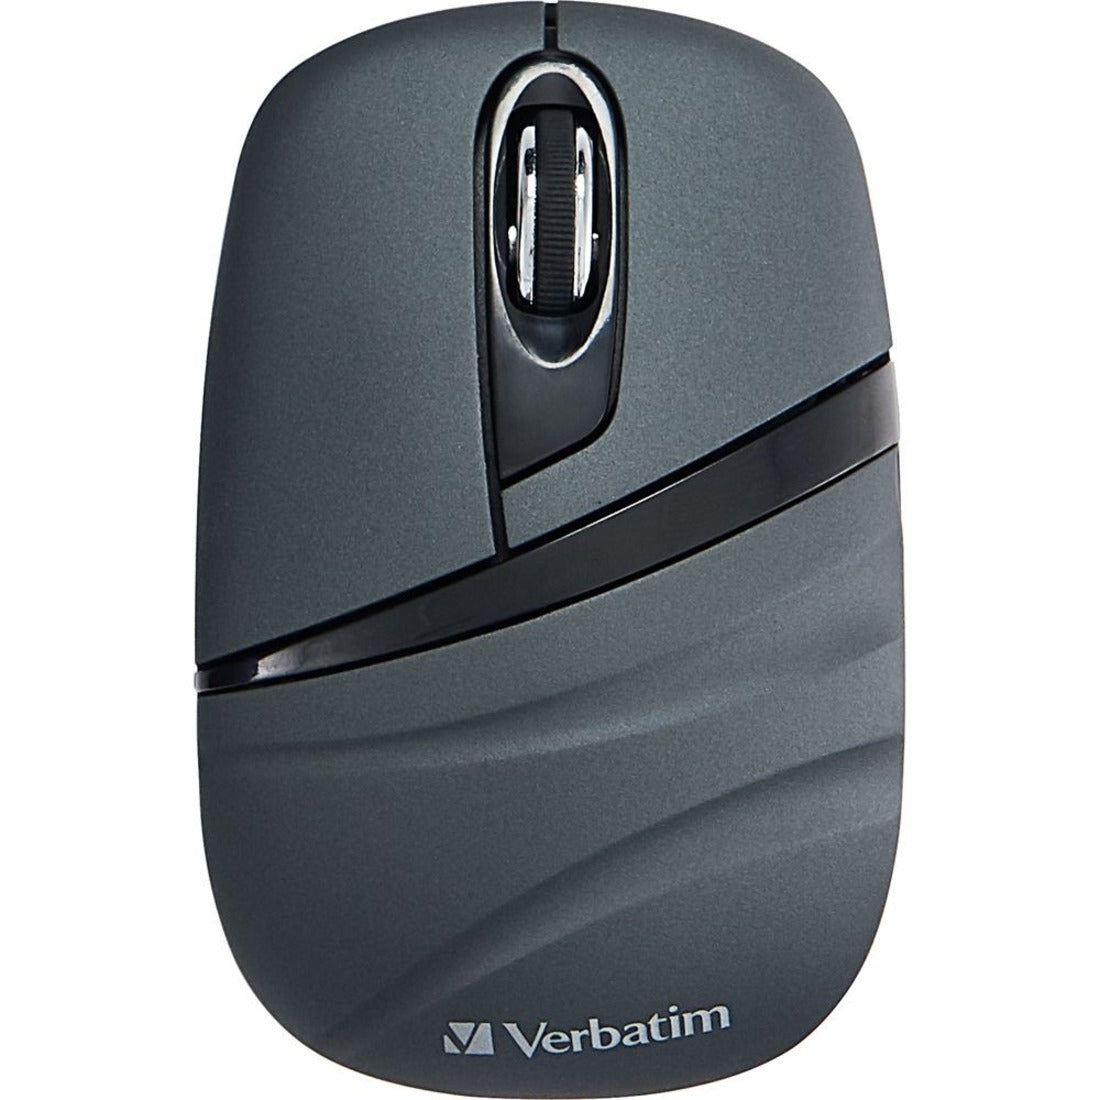 Verbatim 70704 Wireless Mini Travel Mouse, Commuter Series - Graphite